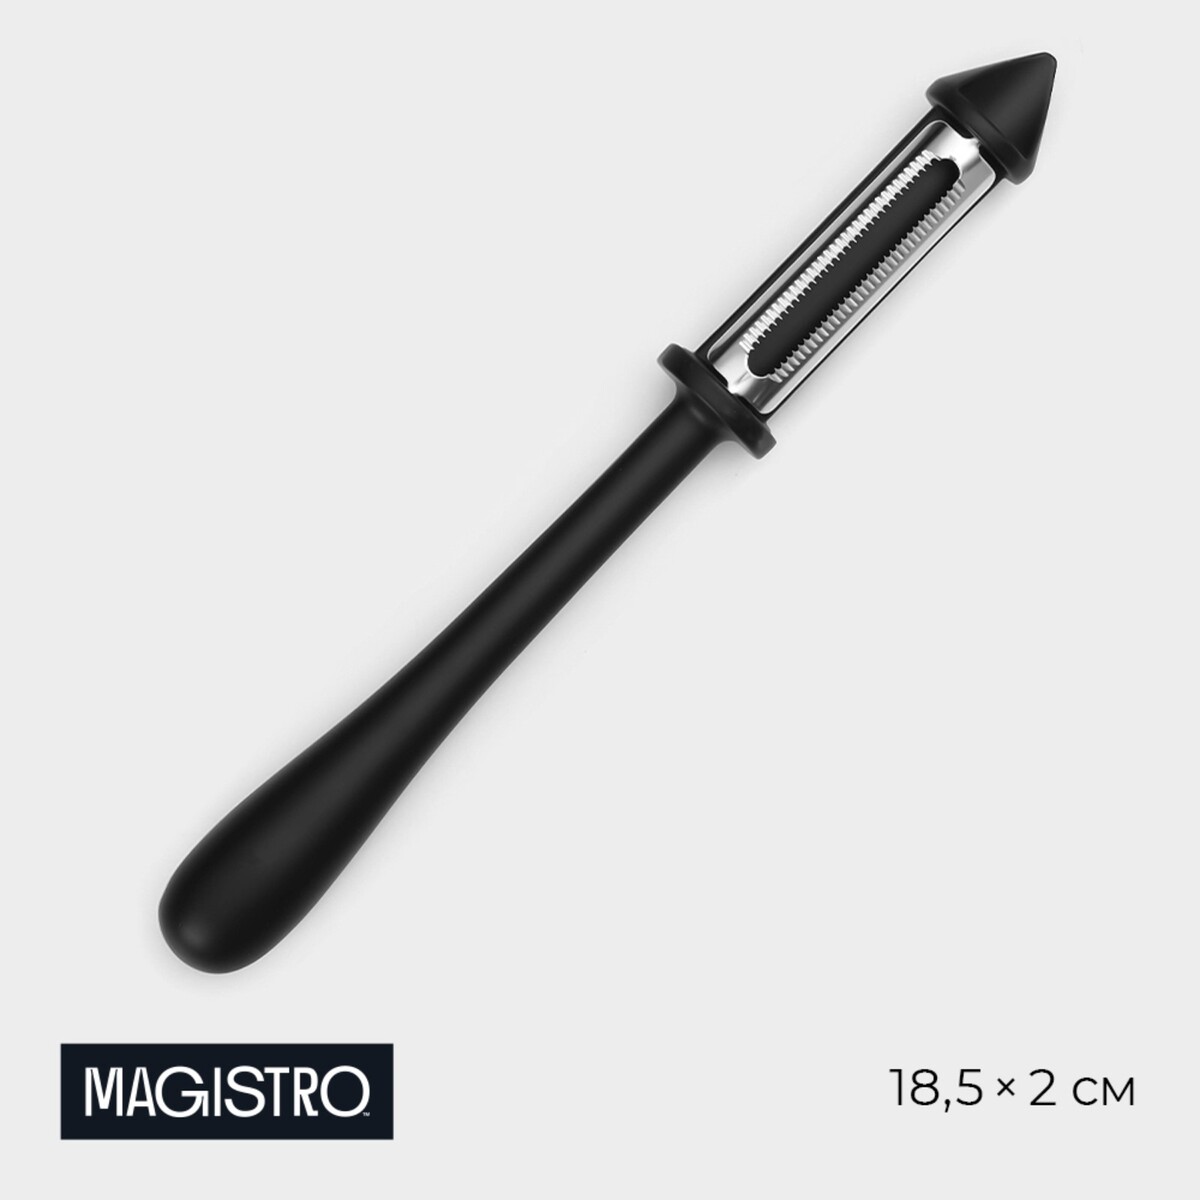 Овощечистка magistro vantablack, 18,5×2 см, многофункциональная, цвет черный sharktoys многофункциональная кухонная корзина